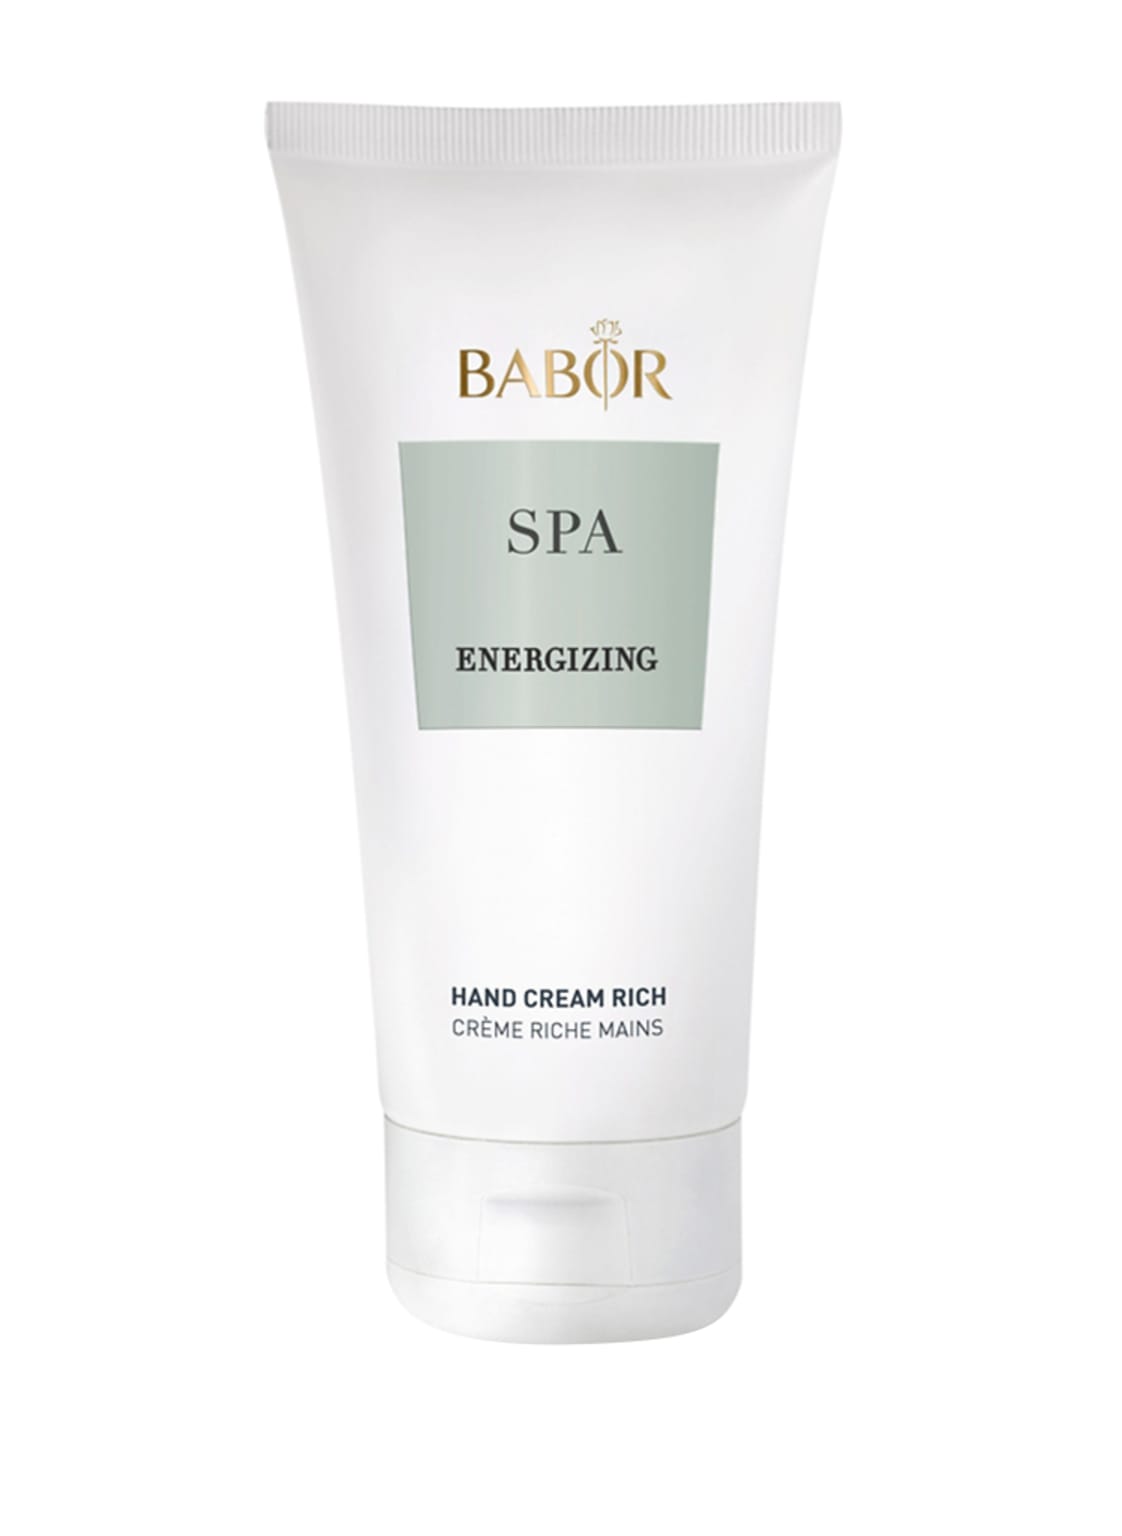 Babor Spa Energizing Hand Cream rich 100 ml von BABOR